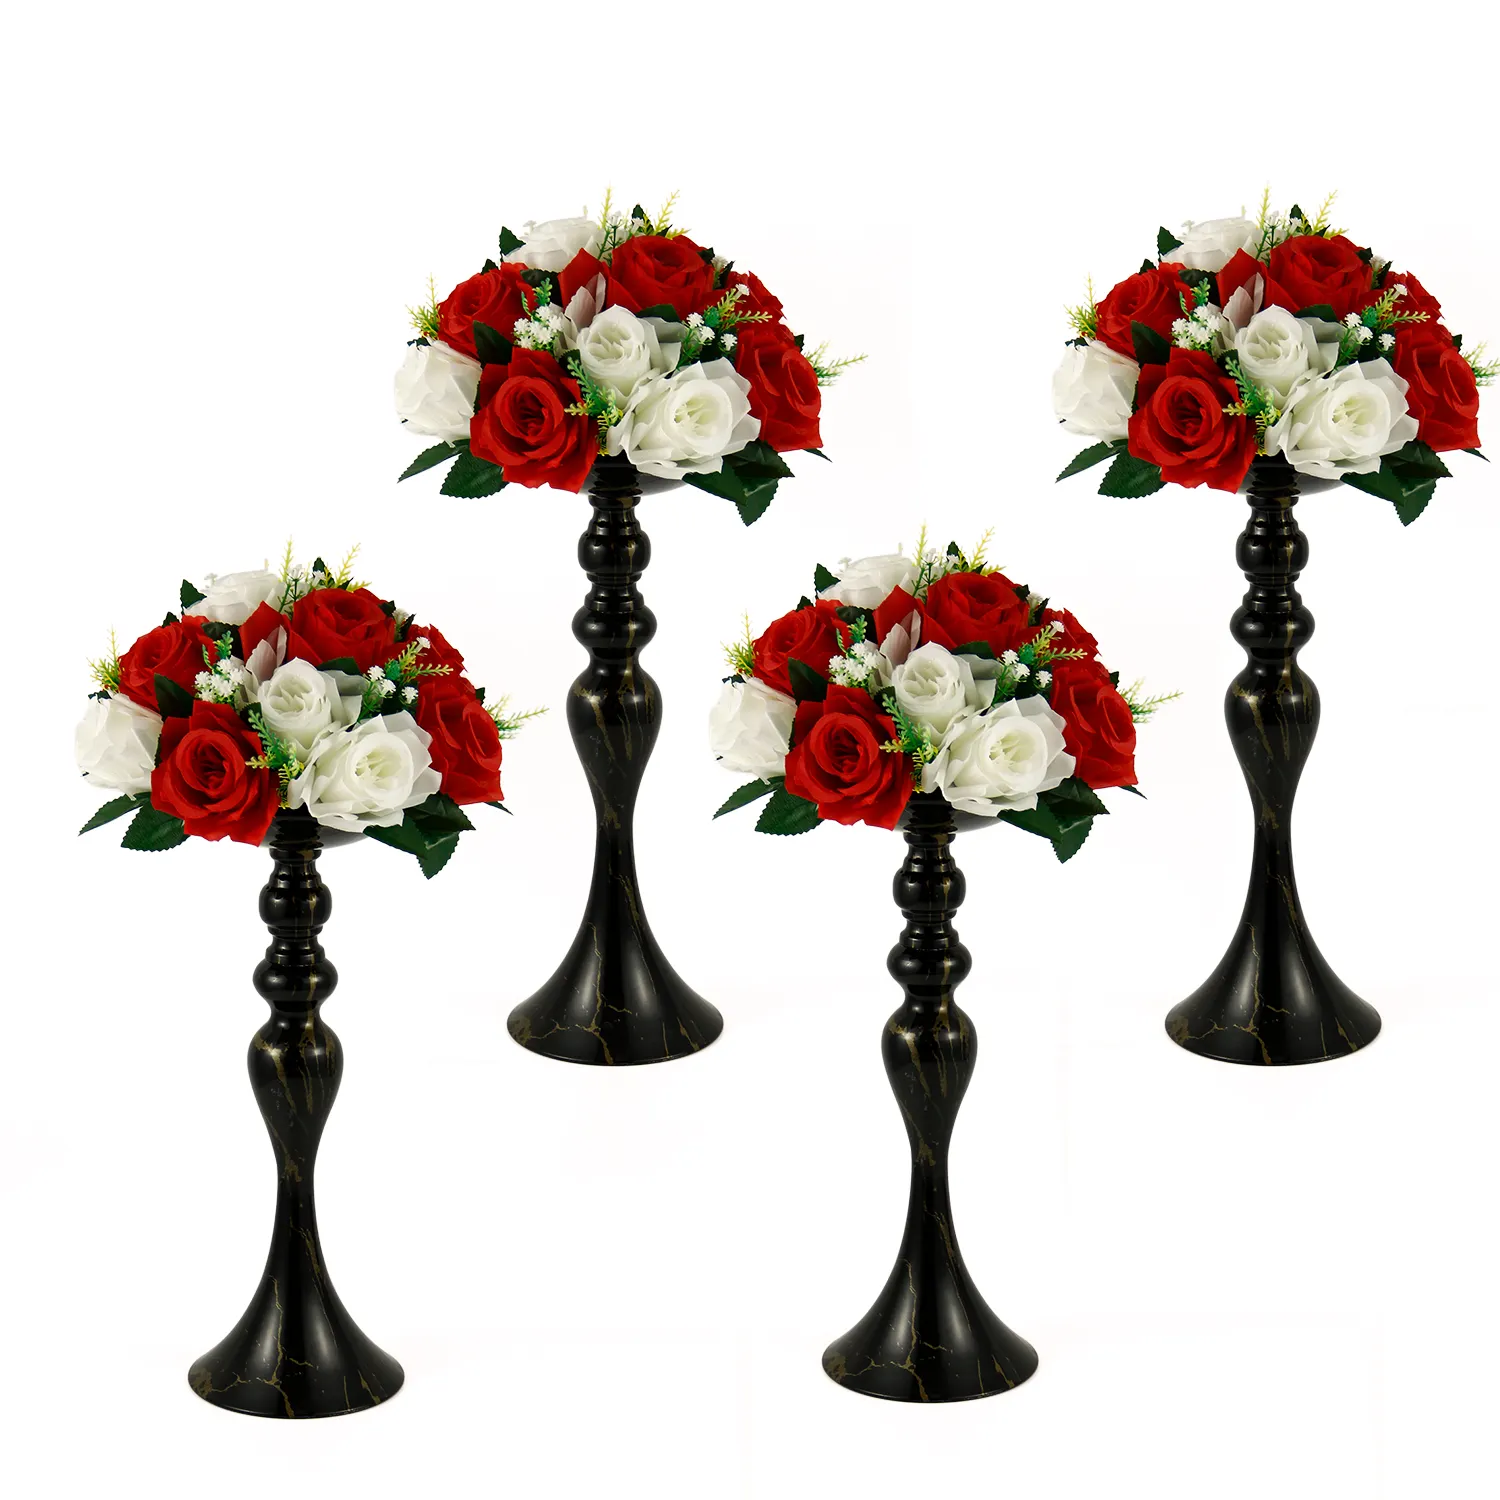 Metal çiçek vazo standı düğün yol kurşun masa Centerpieces oturma odası ev dekorasyon resepsiyon mumluklar